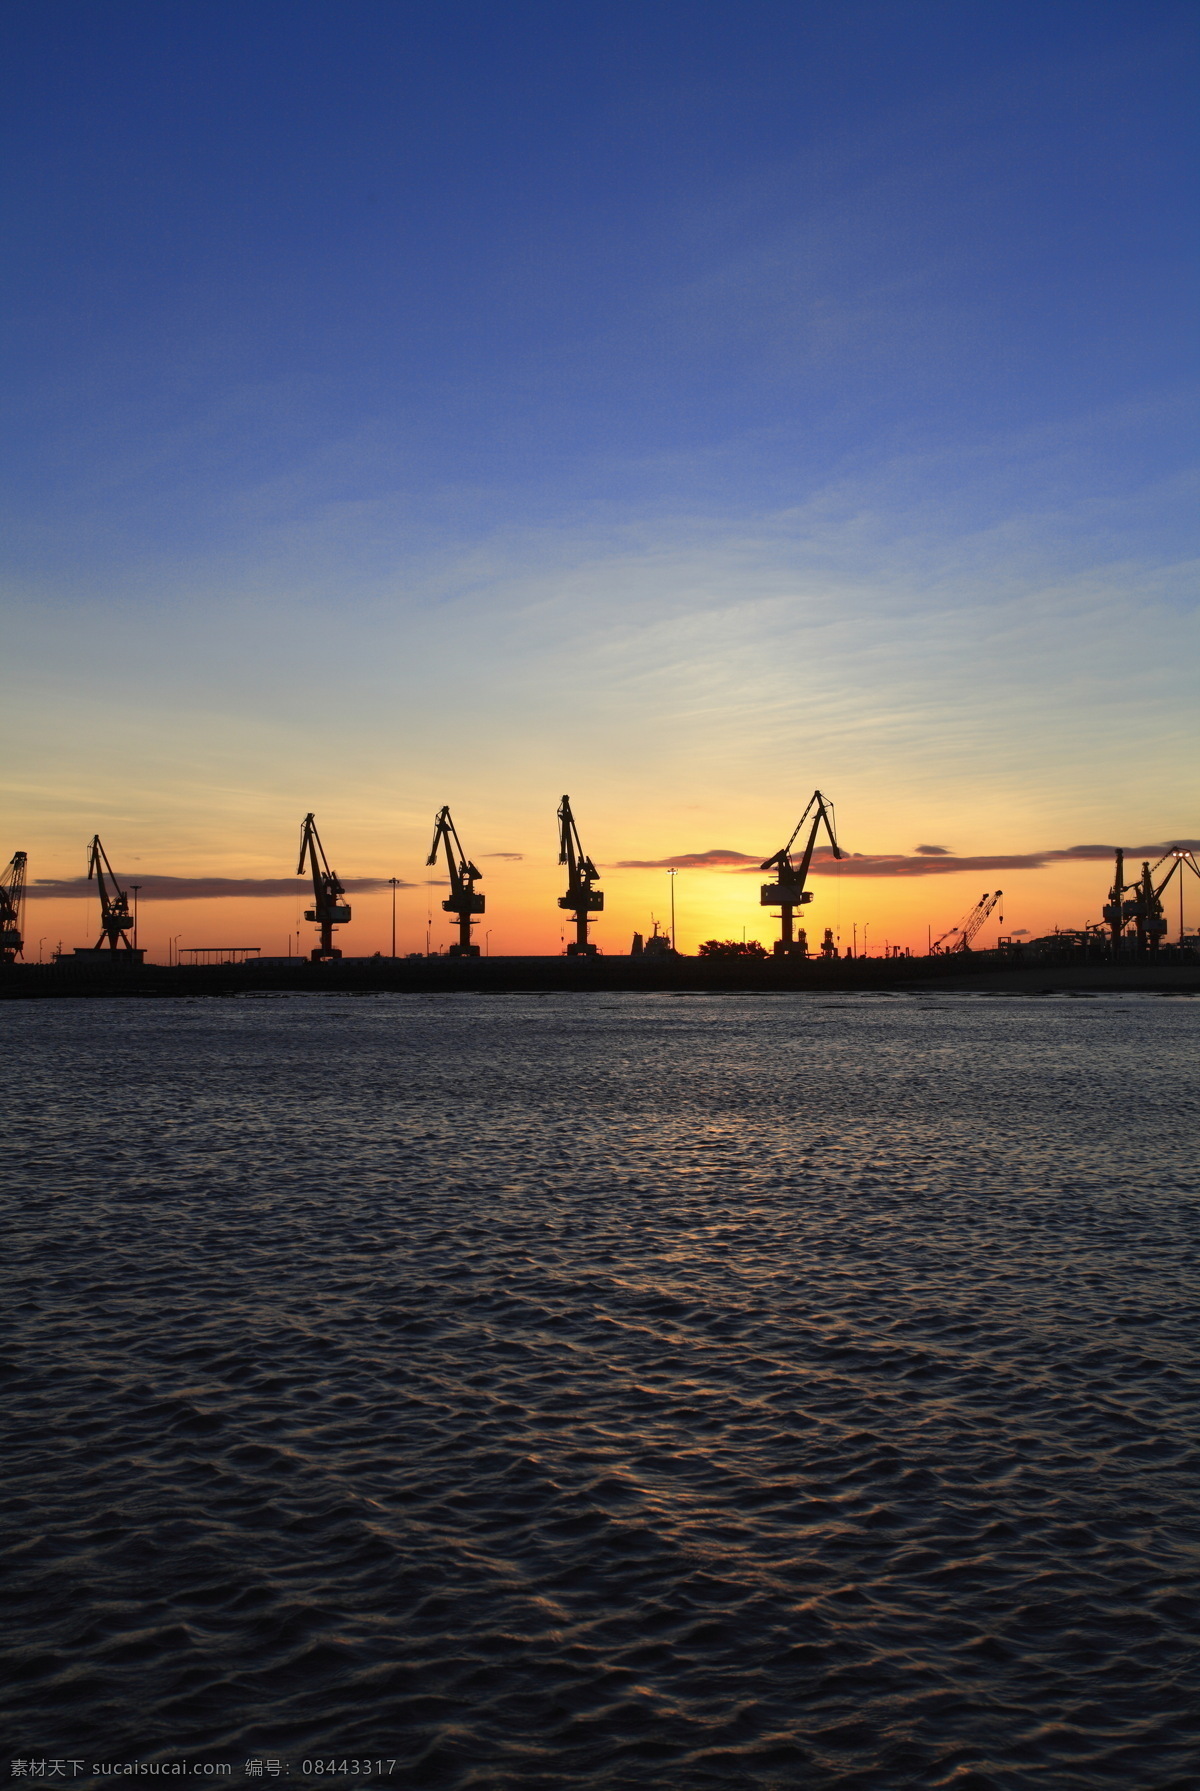 港口 码头 吊机 起重器 大海 泊位 机械 船务 工业生产 现代科技